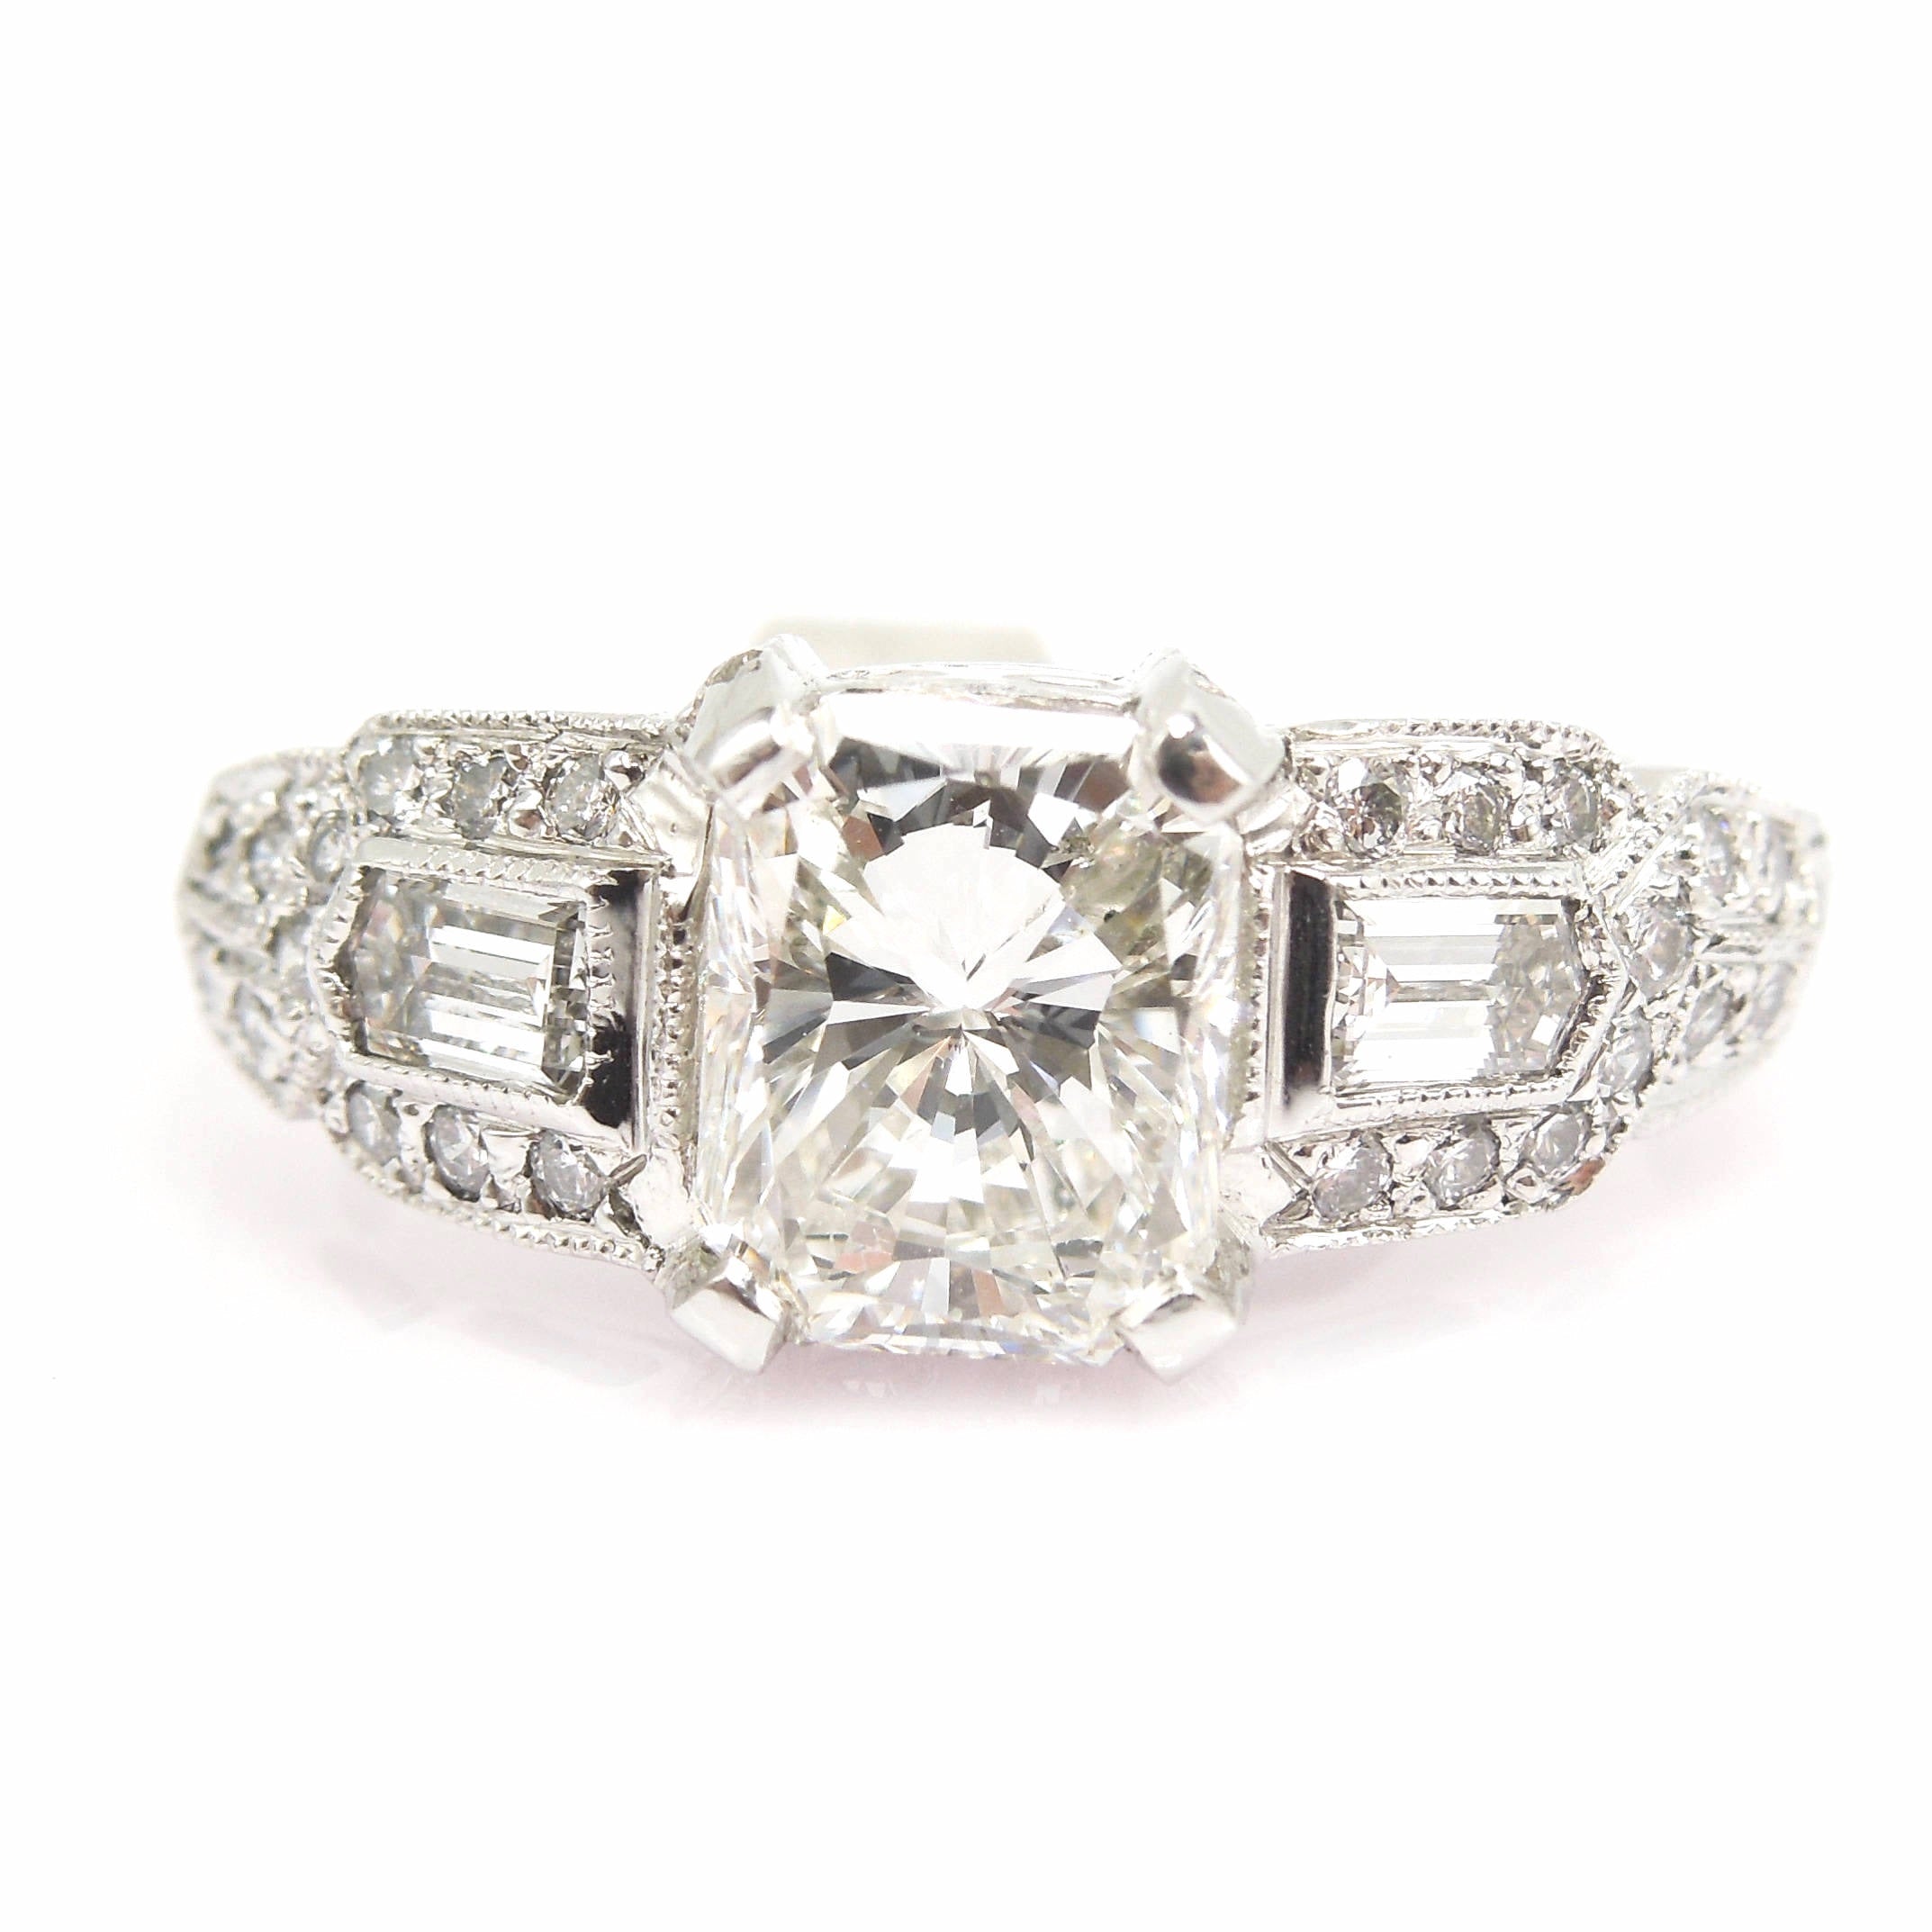 1.55 Carat Radiant Cut Diamond Art Deco Style Ring in Platinum